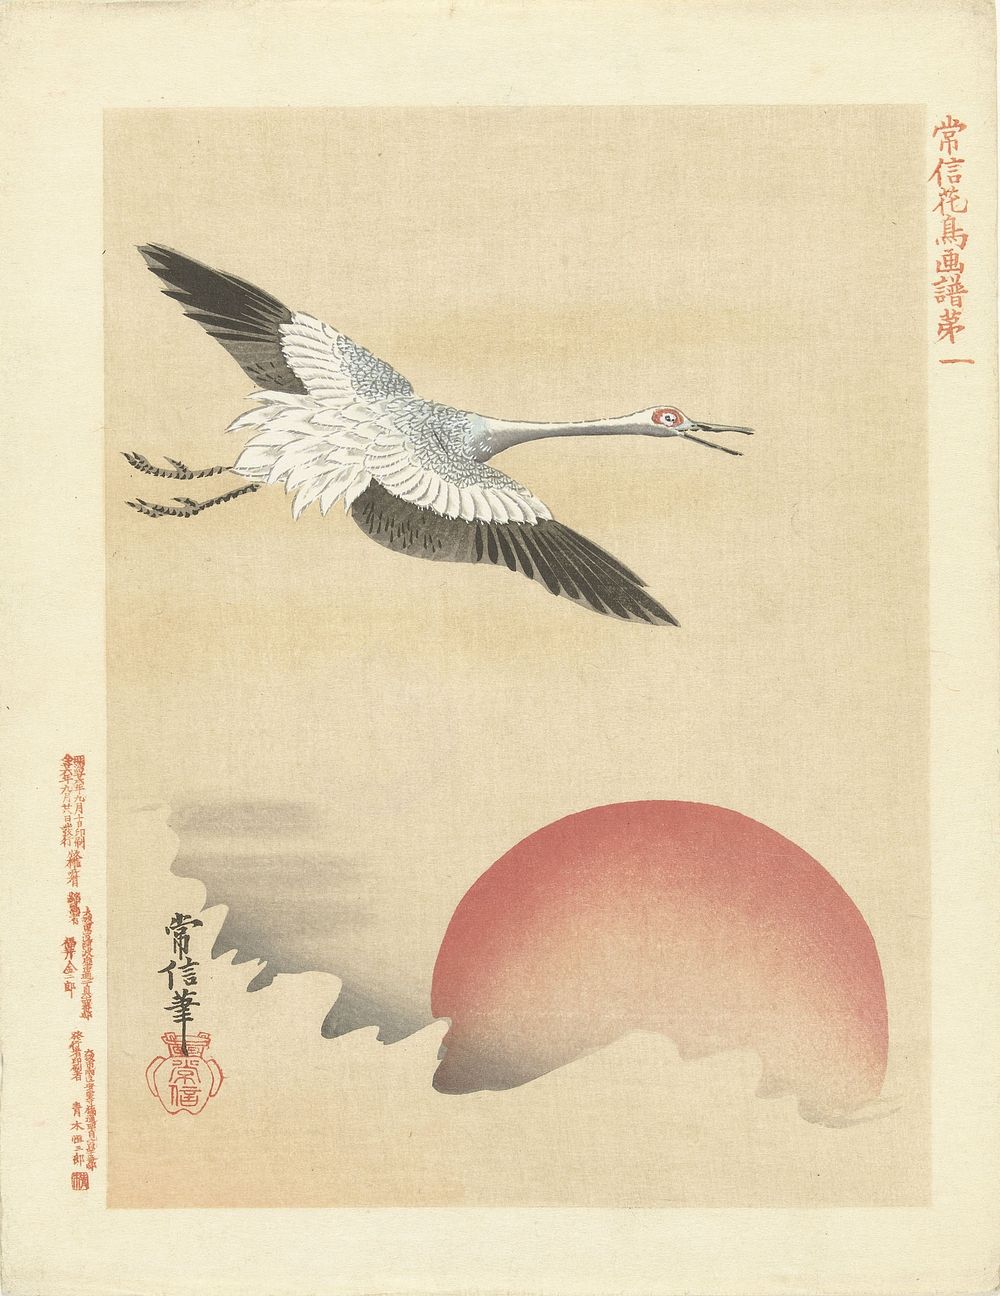 Kraanvogel vliegend bij rode maan (1893) by Kano Tsunenobu, Aoki Kôsaburô and Aoki Kôsaburô